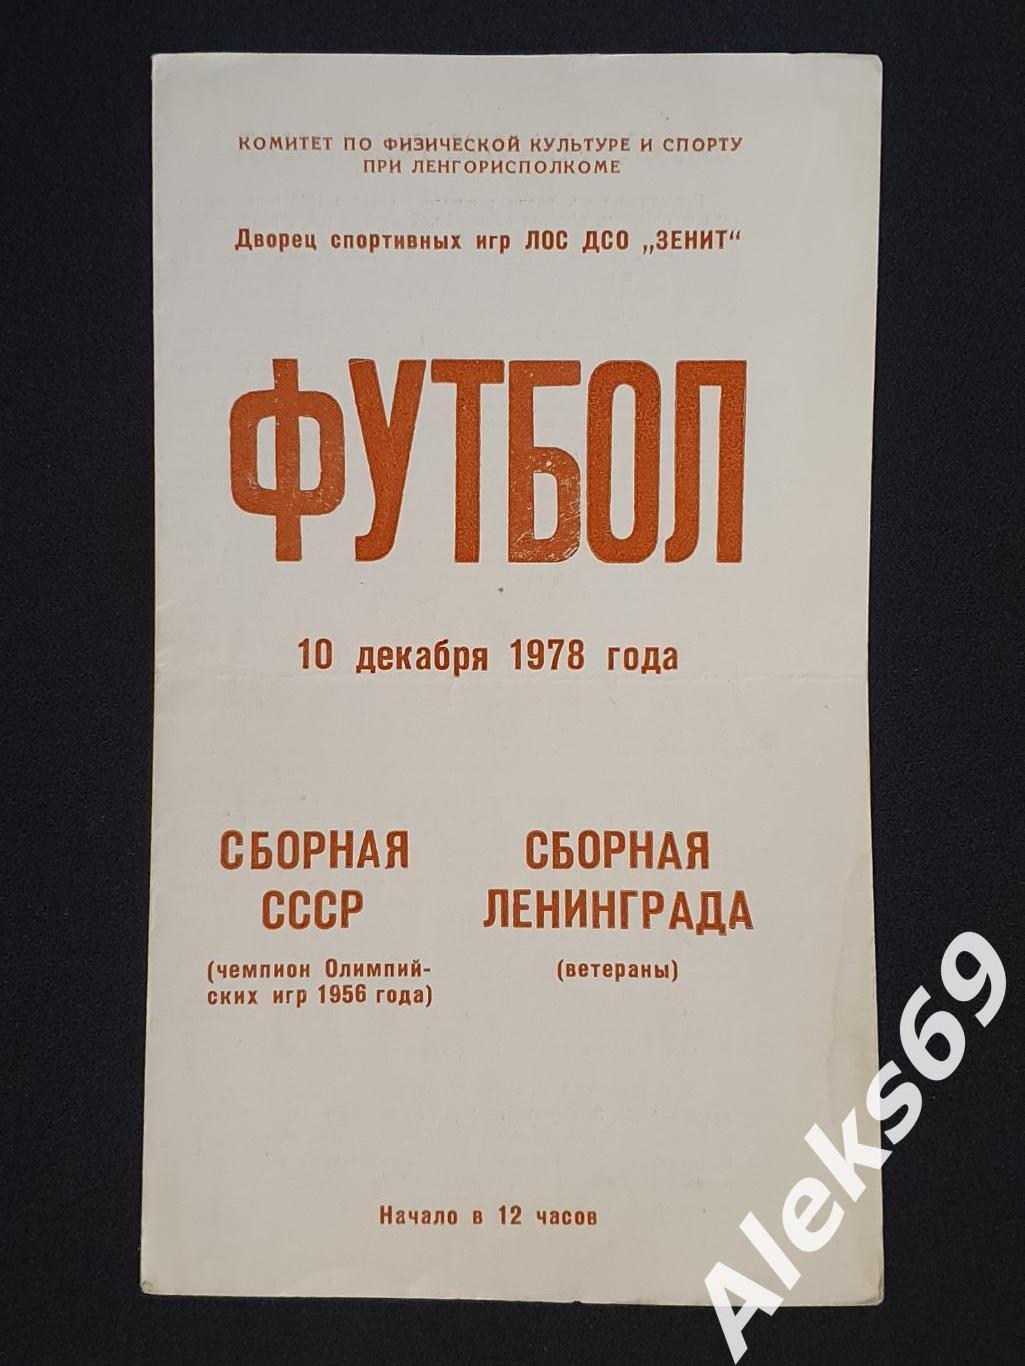 Сборная СССР - Сборная Ленинграда (ветераны). ТМ. 1978 год